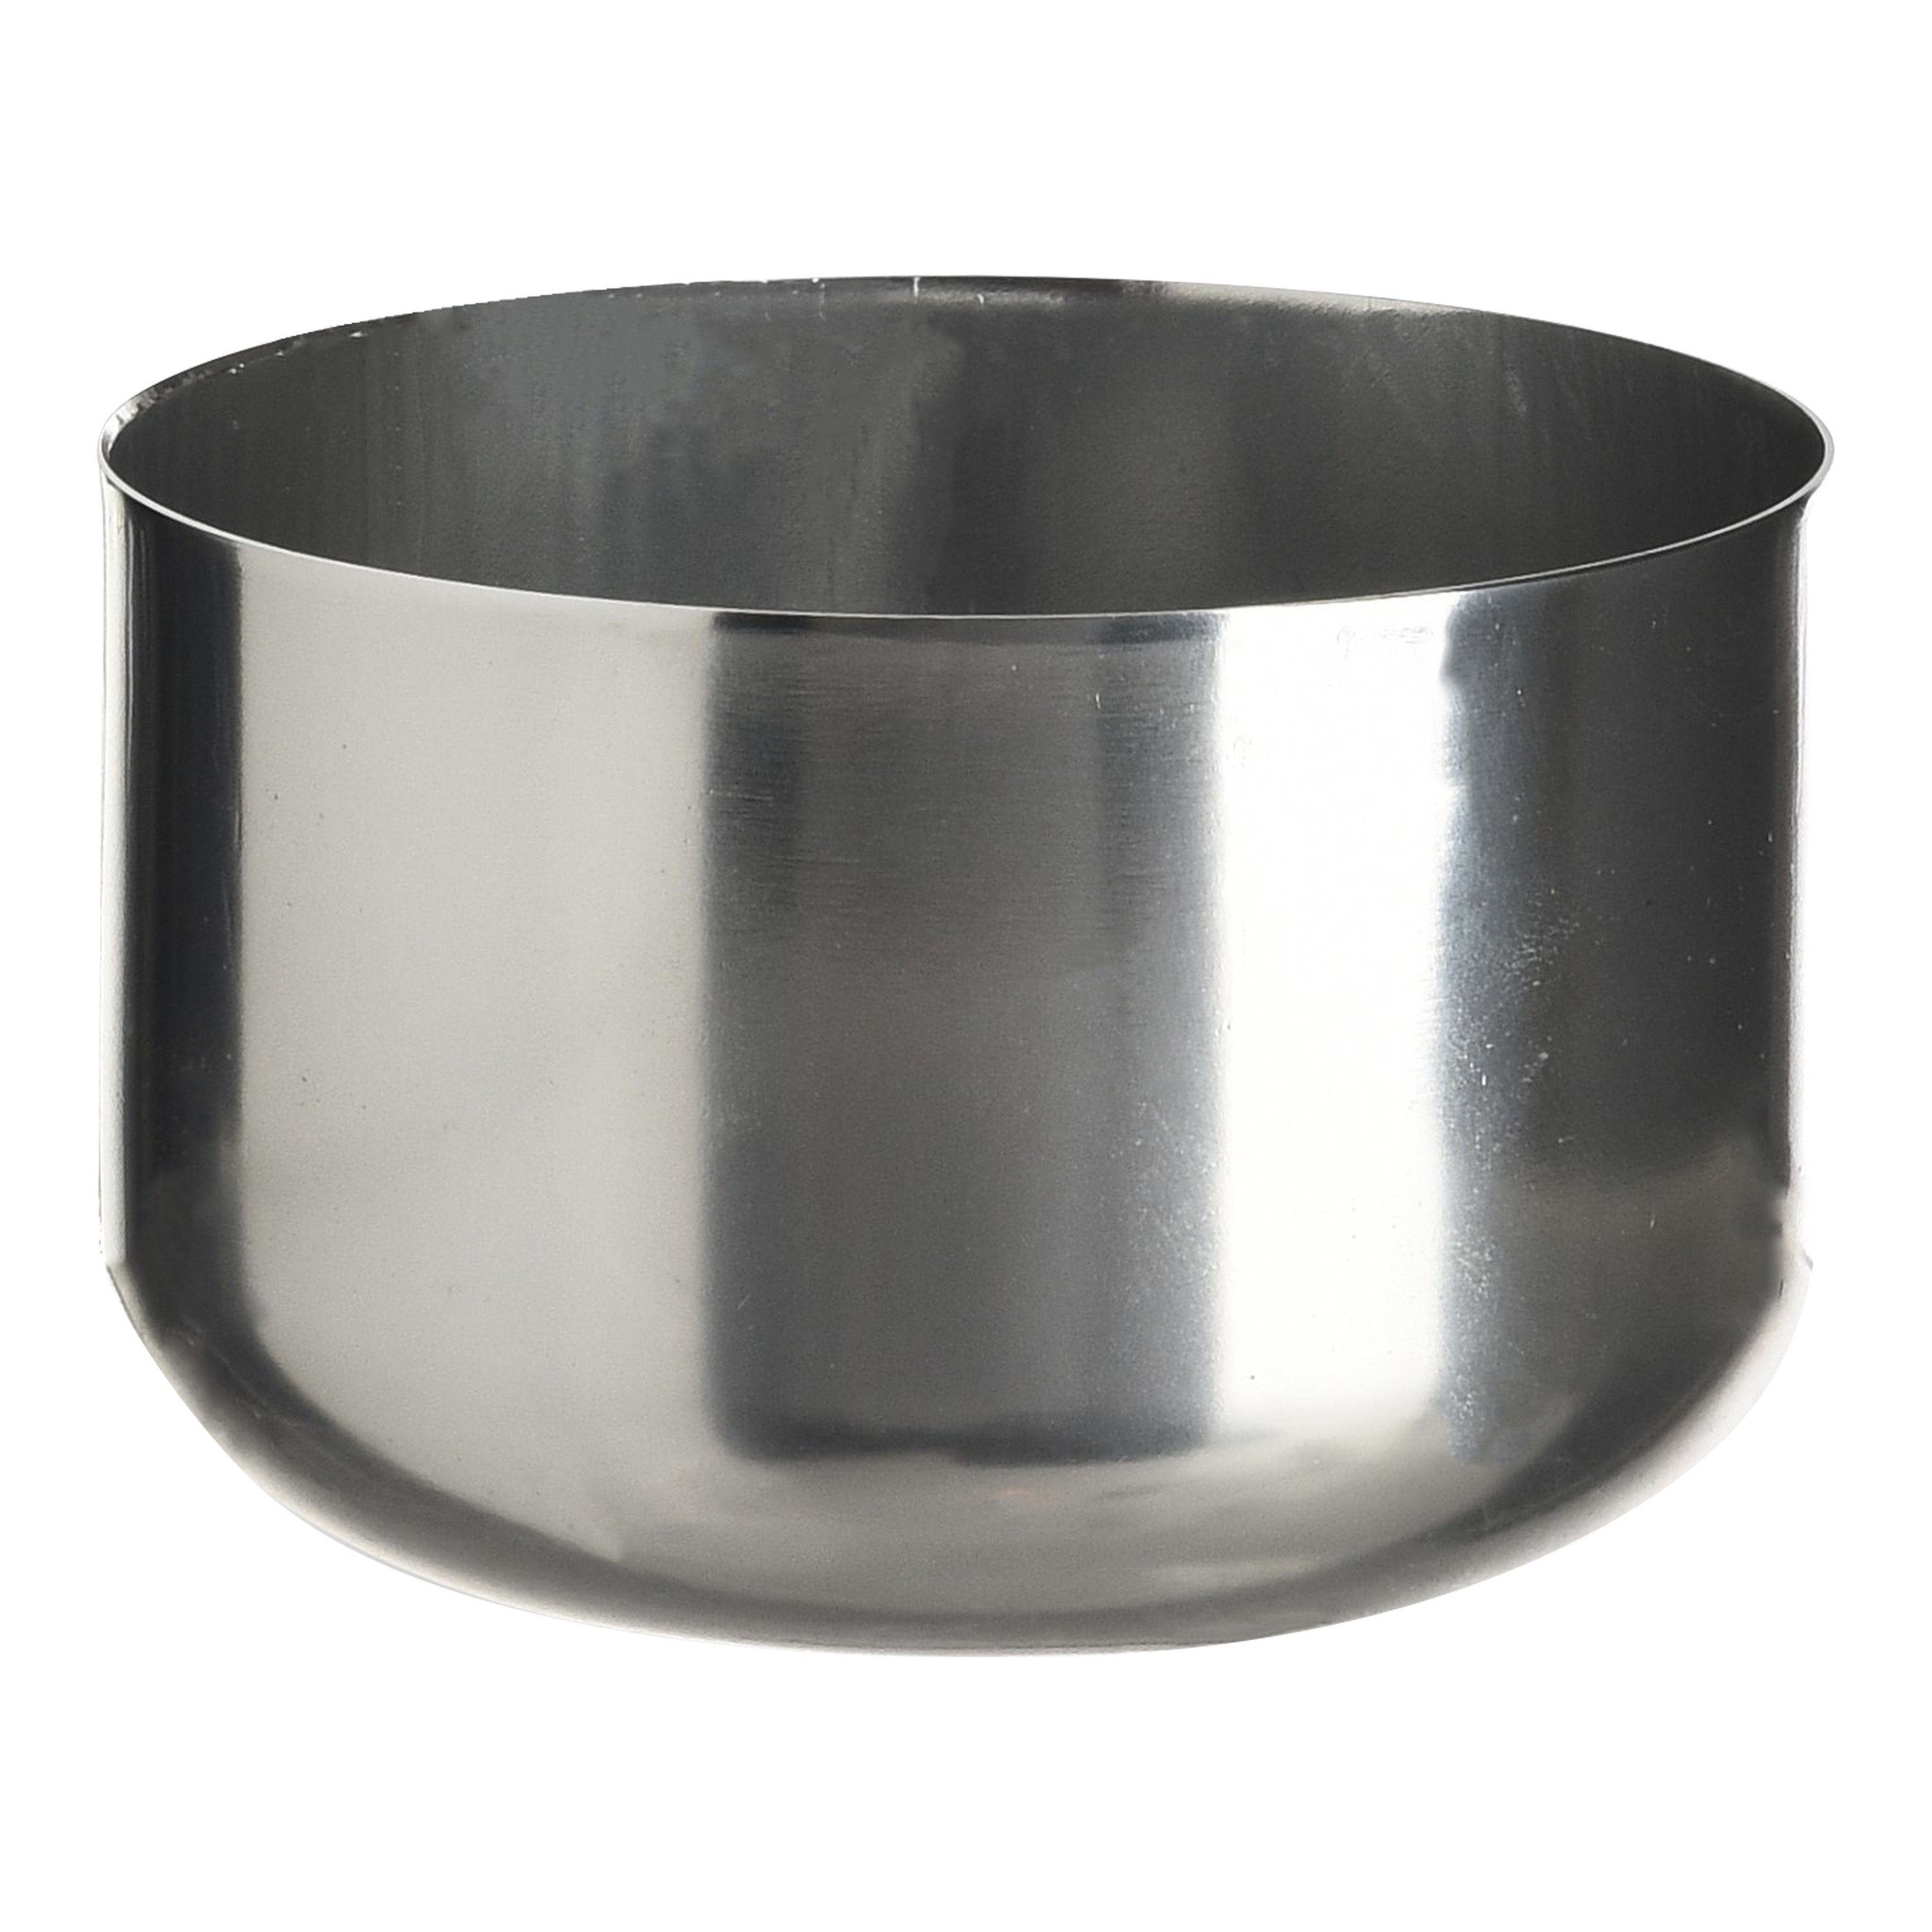 Depot Kerzentablett Kerzenteller Mix & Match (Packung, 1 Kerzenteller), aus Aluminium, Ø 8 Zentimeter, H 5 Zentimeter Silber